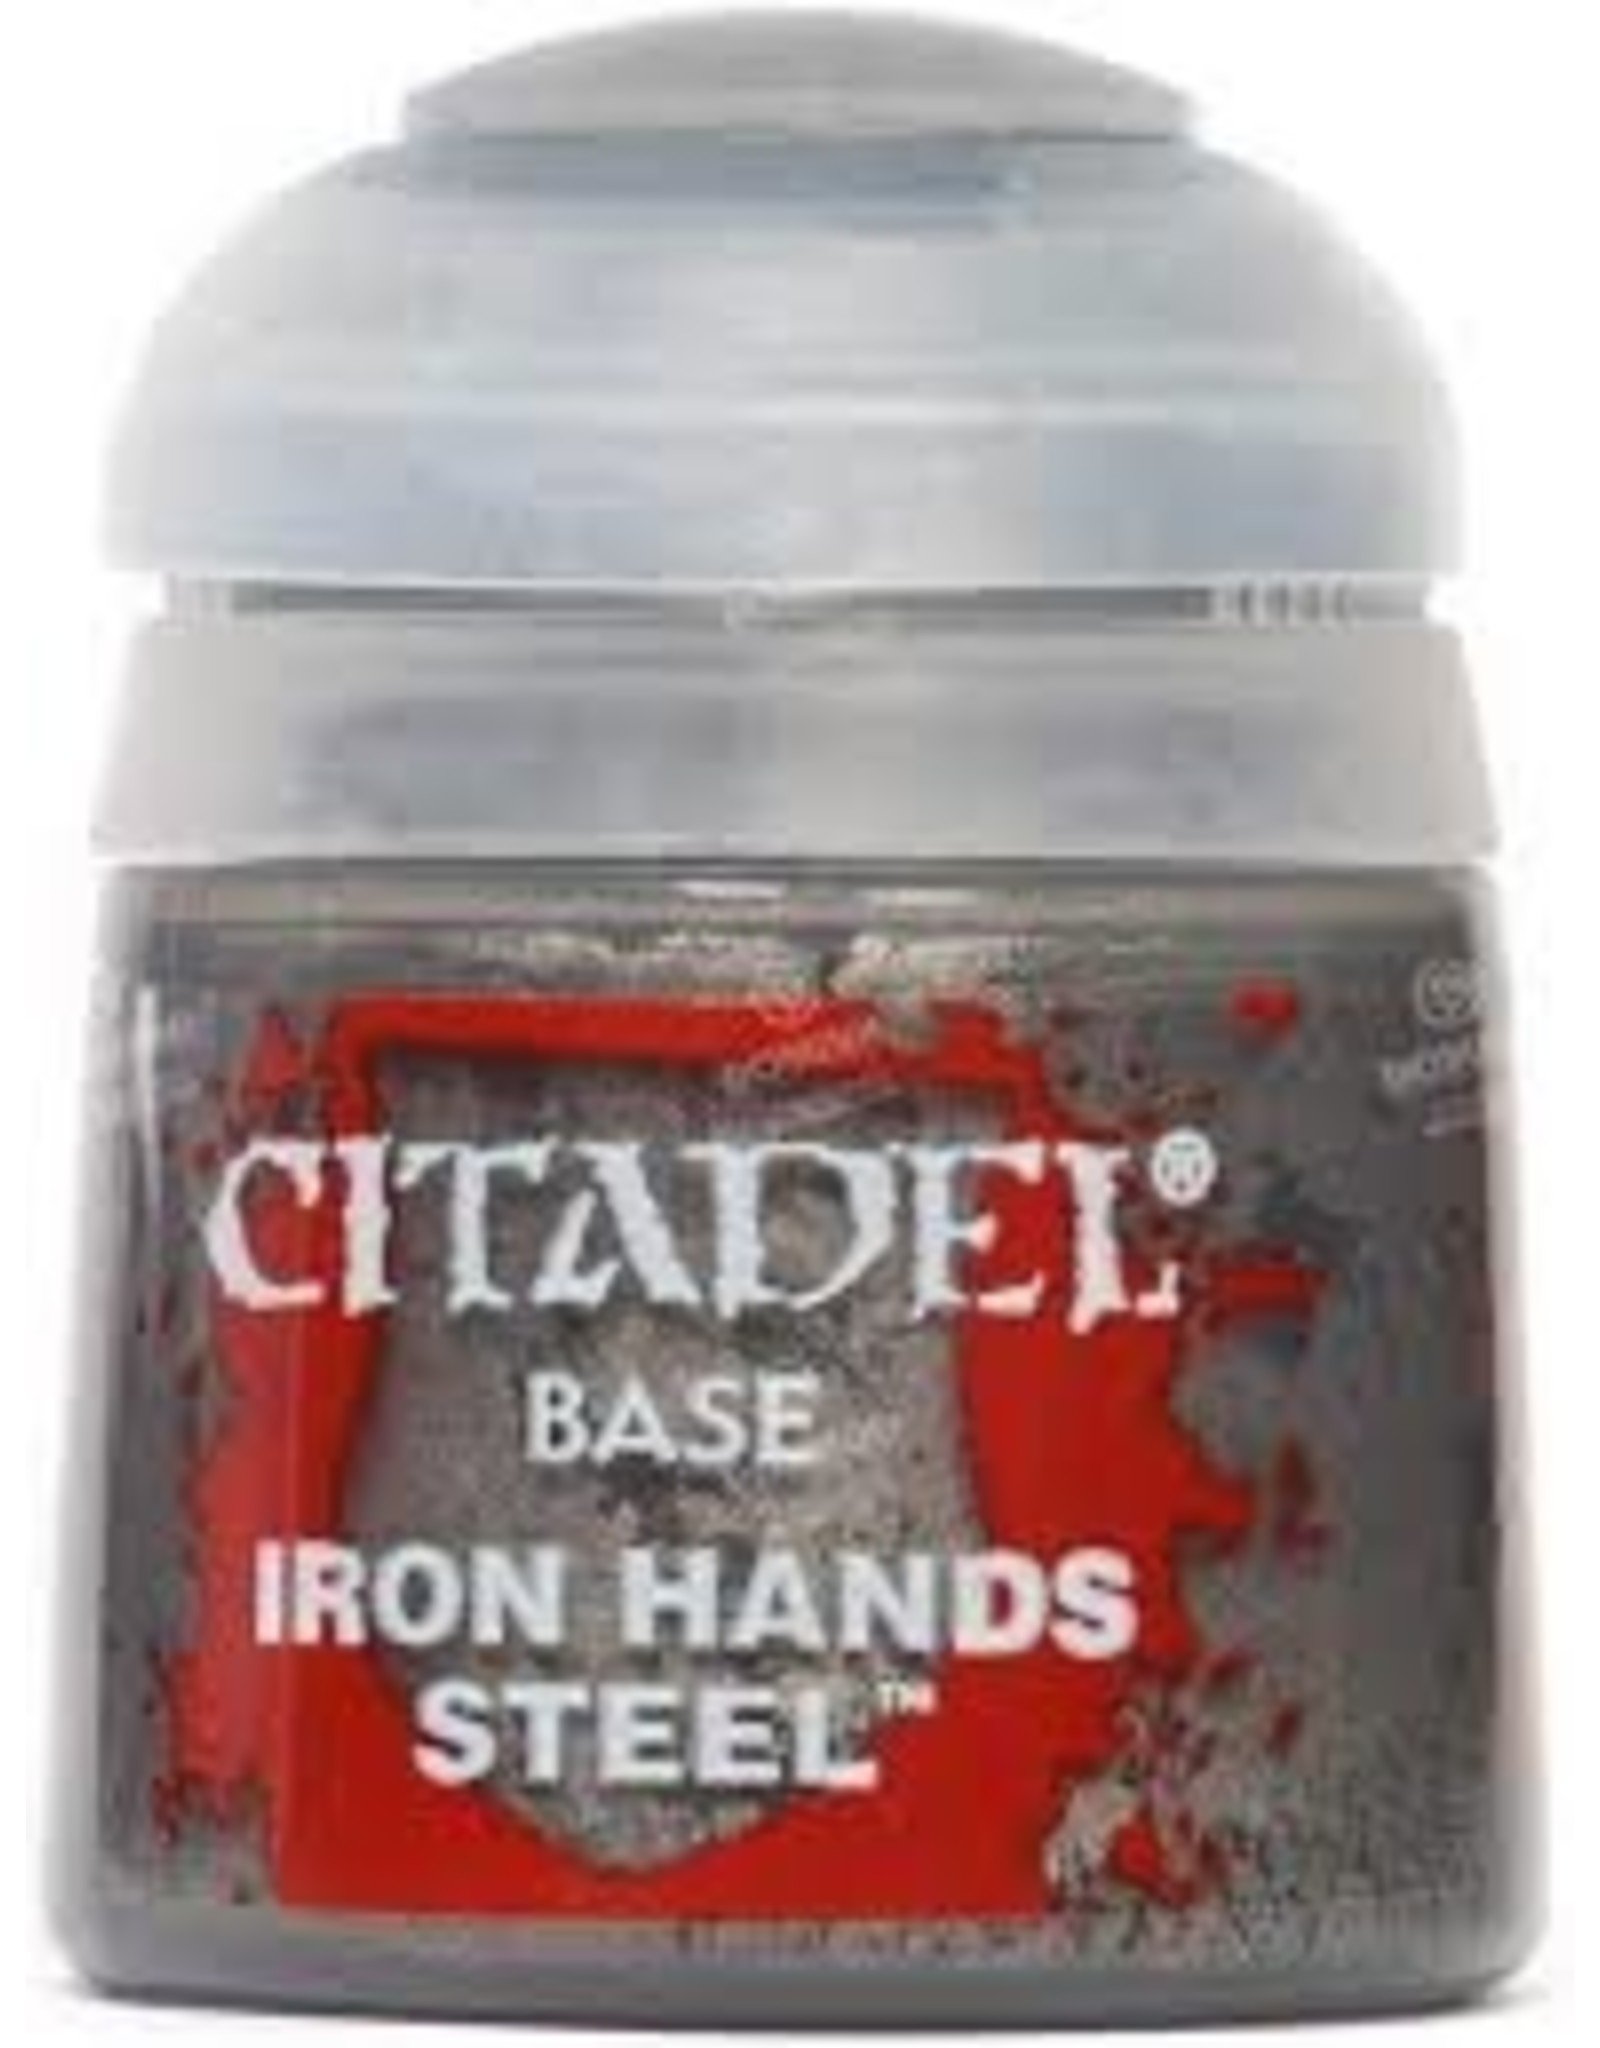 Citadel Citadel Paints: Base - Iron Hands Steel